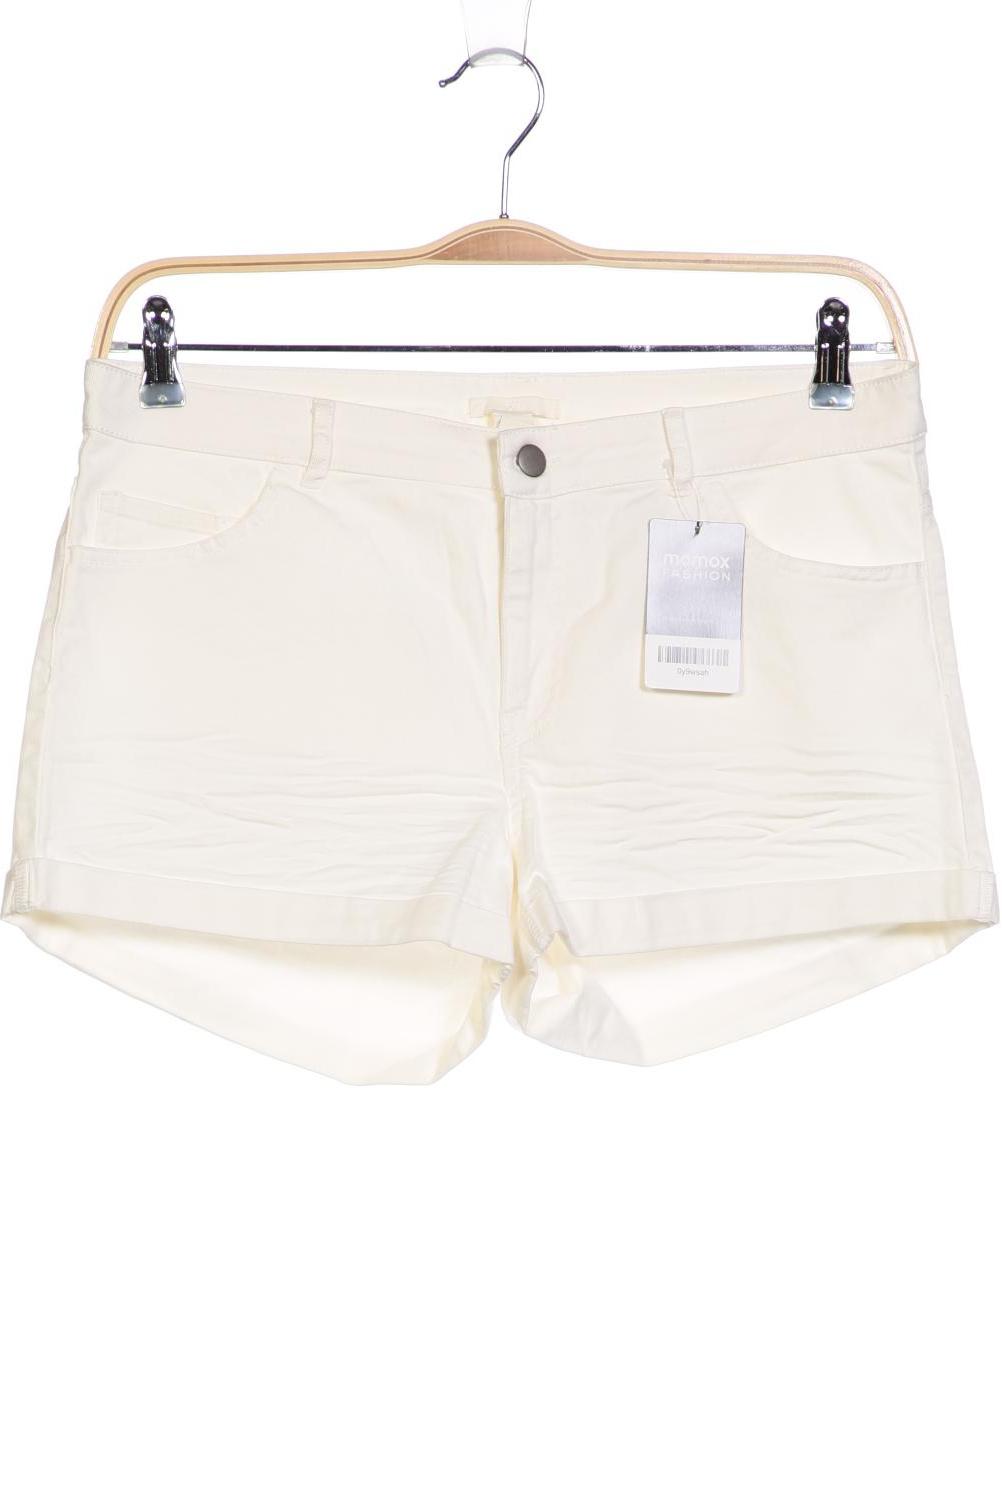 H&M Damen Shorts, weiß, Gr. 42 von H&M